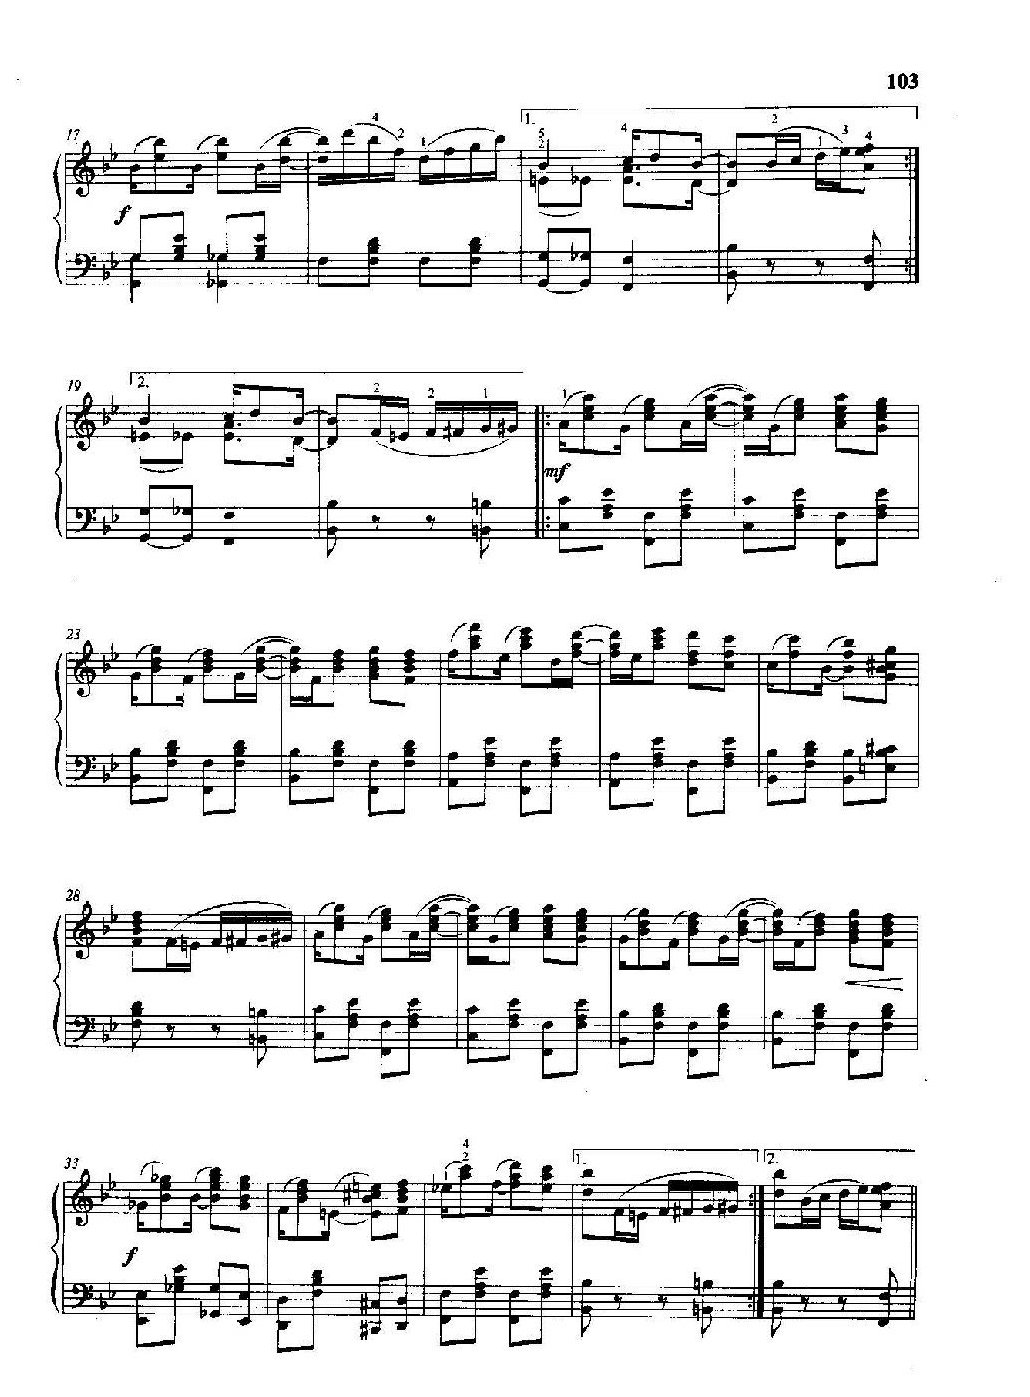 雷格泰姆钢琴乐谱《凤梨树雷格》雷格泰姆之王斯科特·乔普林